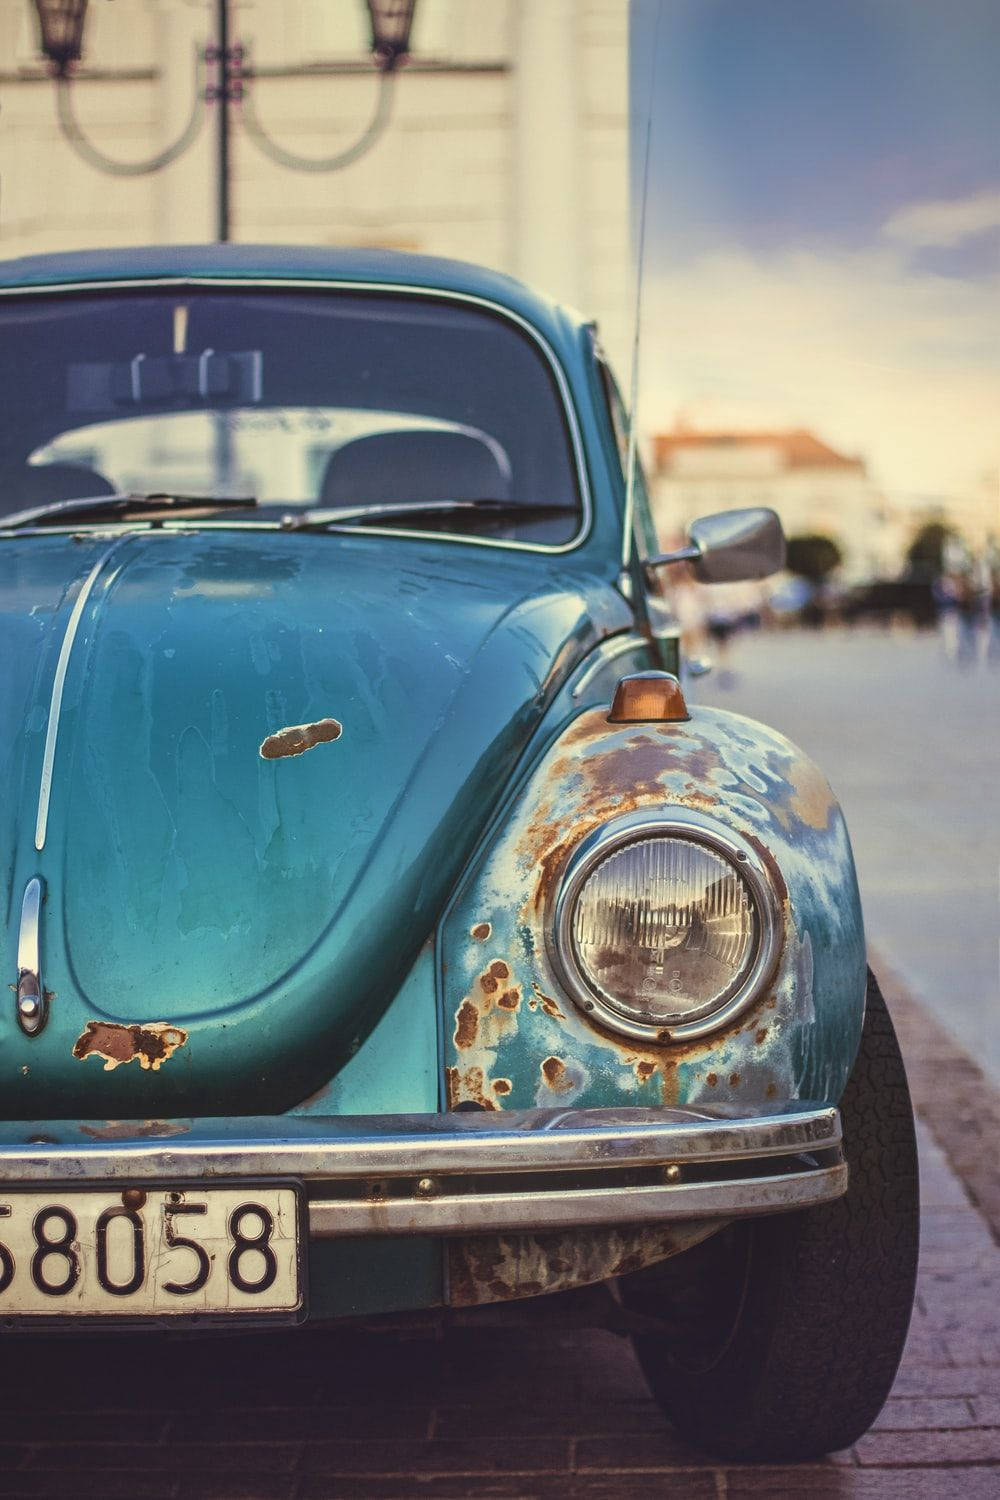 Dette tapet viser et klassisk tysk Volkswagen Beetle bil firmaer. Det har et rustet finish, der gør det meget rustikt. Wallpaper